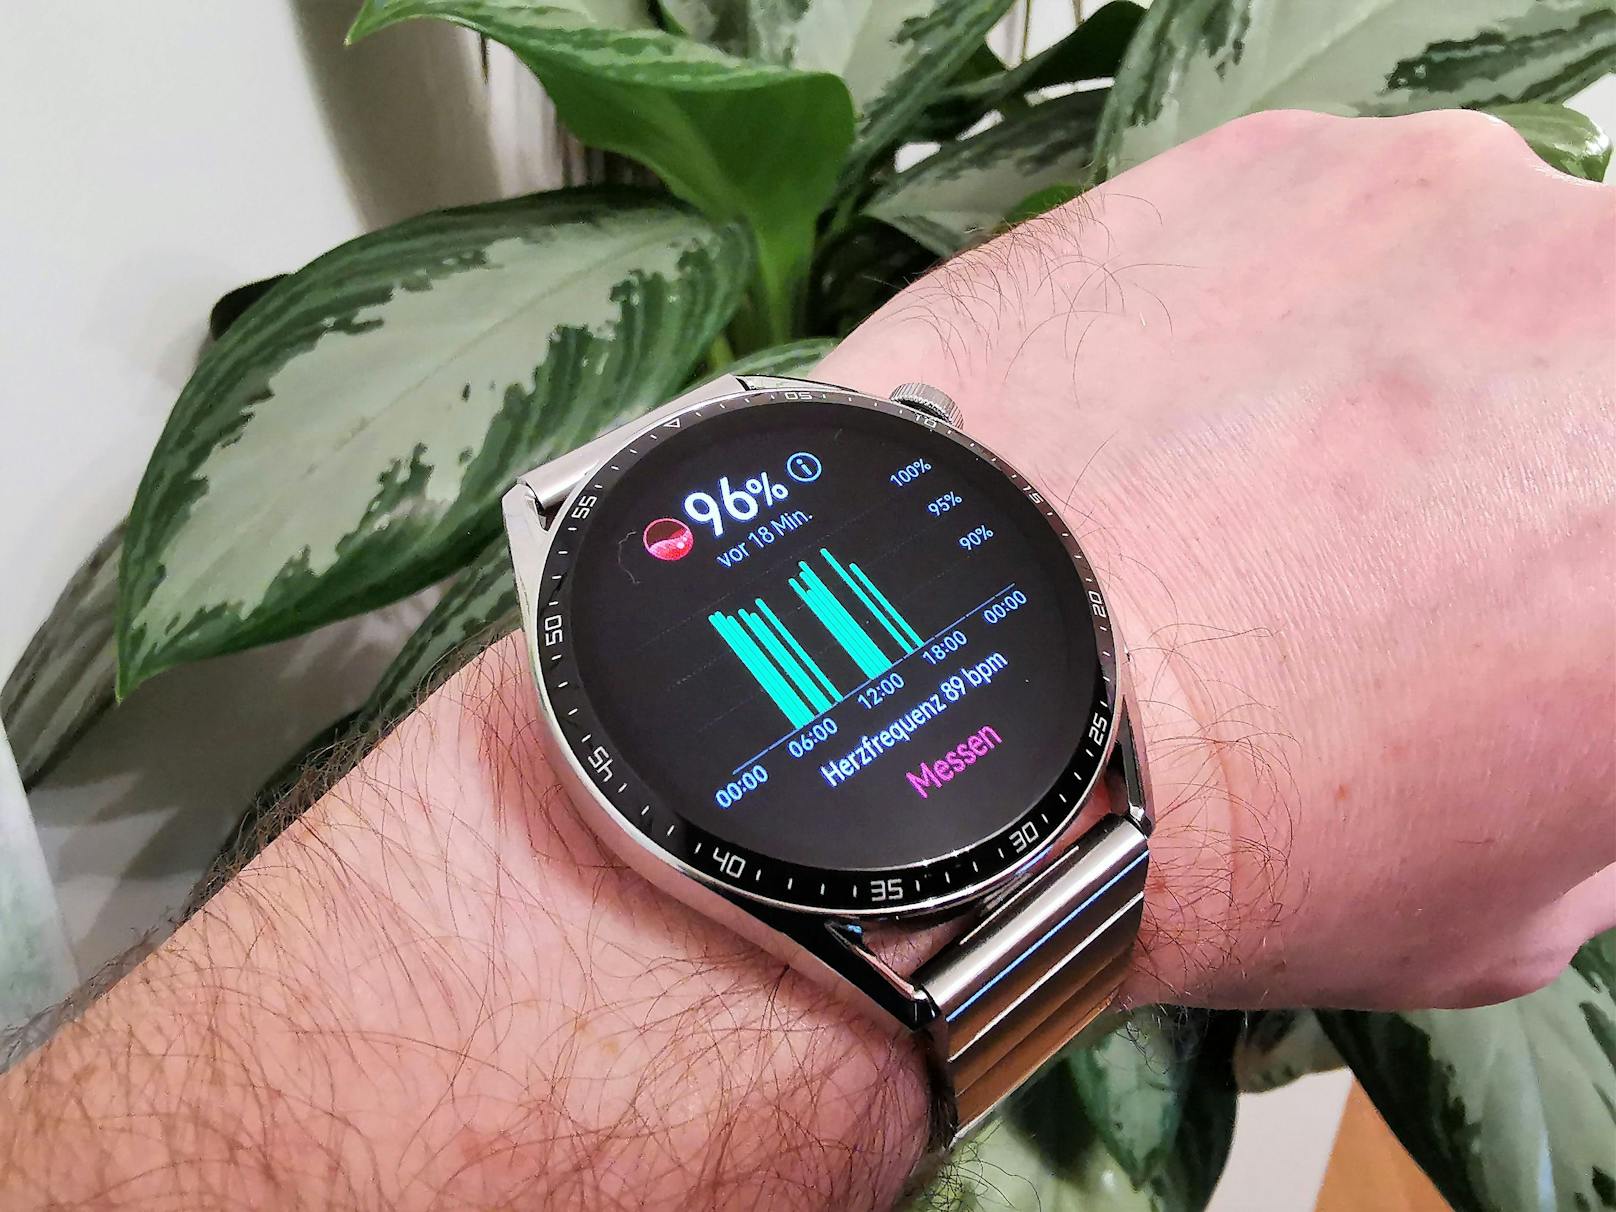 Beides ist ein Zugewinn für die Smartwatch und den Nutzer. Dass die Uhr zudem reibungslos mit Android und iOS funktioniert, macht sie auch einer breiten Masse zugänglich.